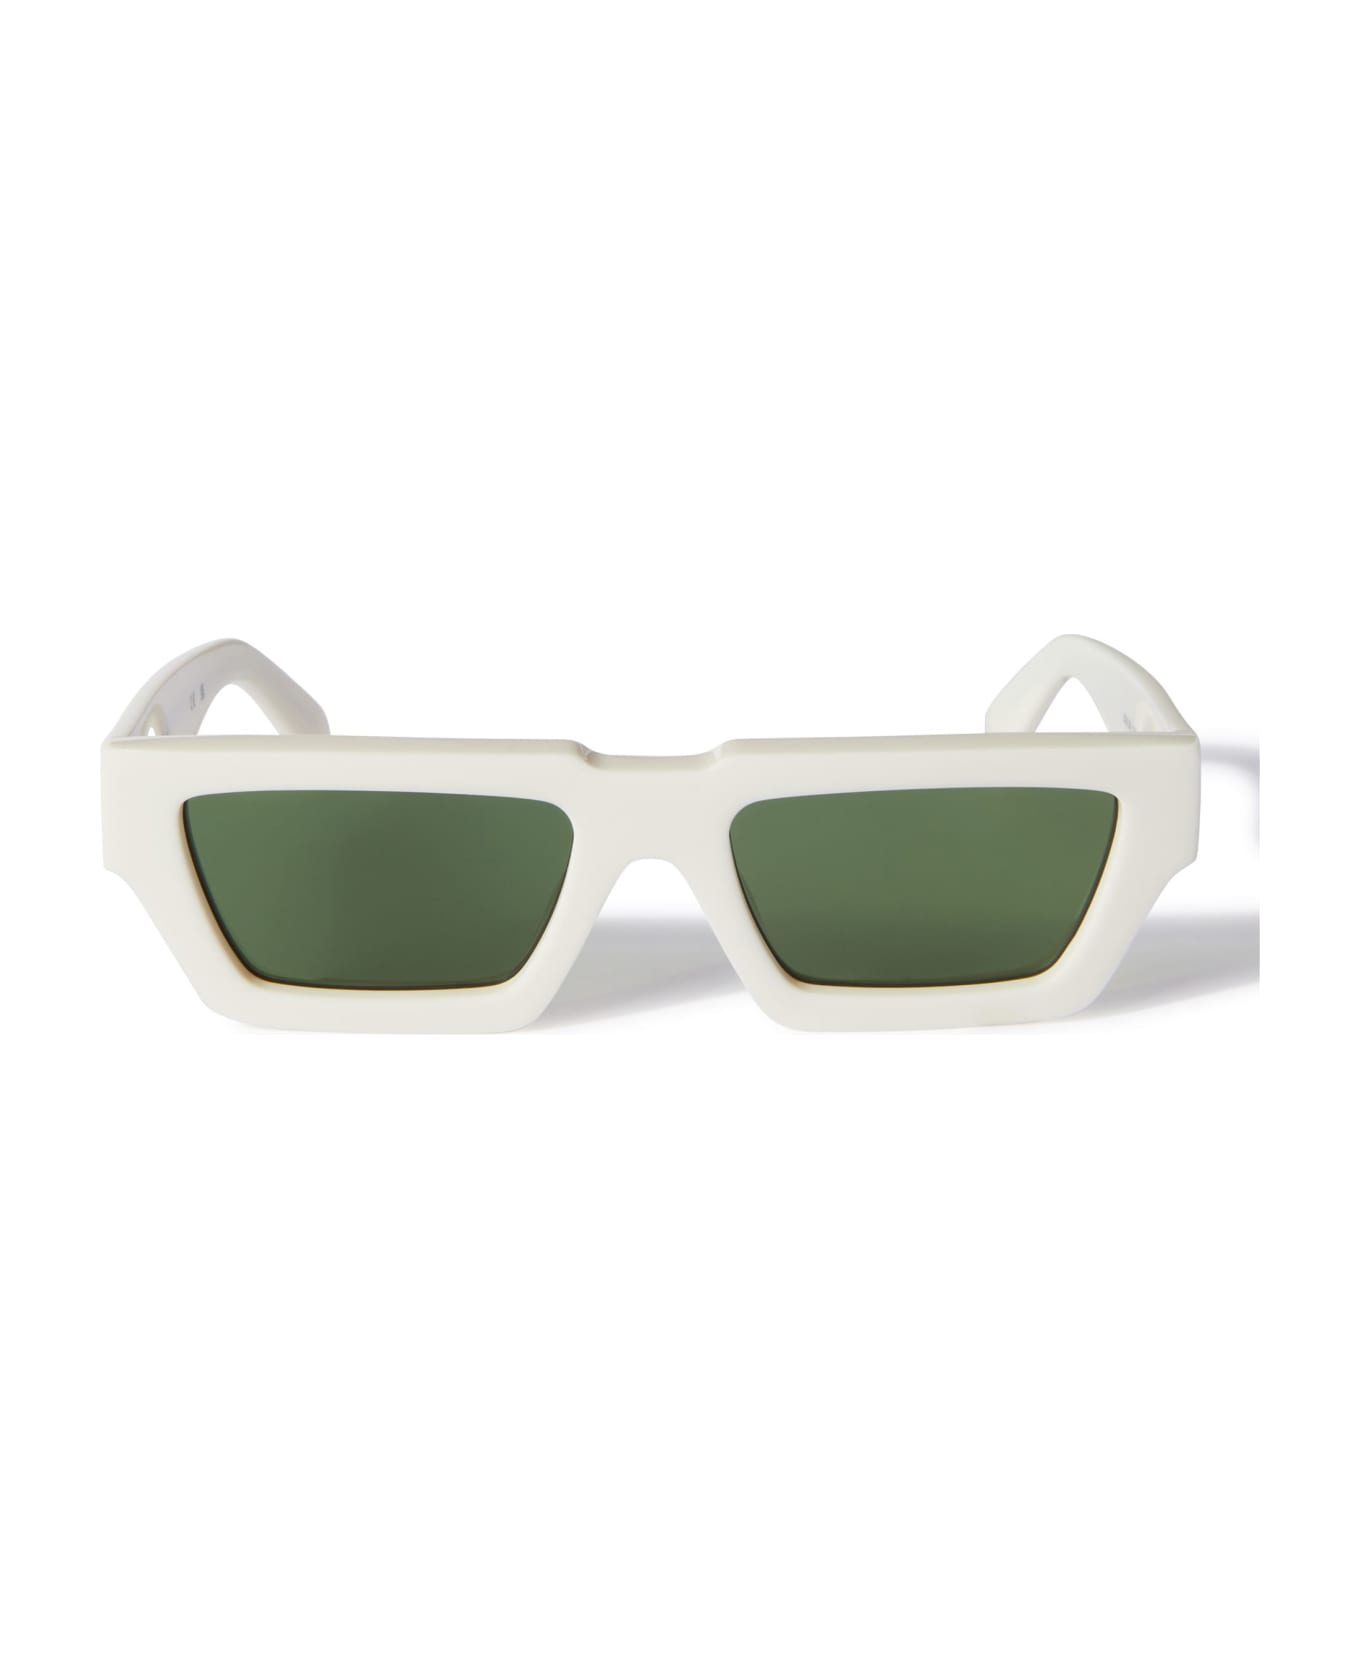 Off-White Manchester - White / Green Sunglasses - White